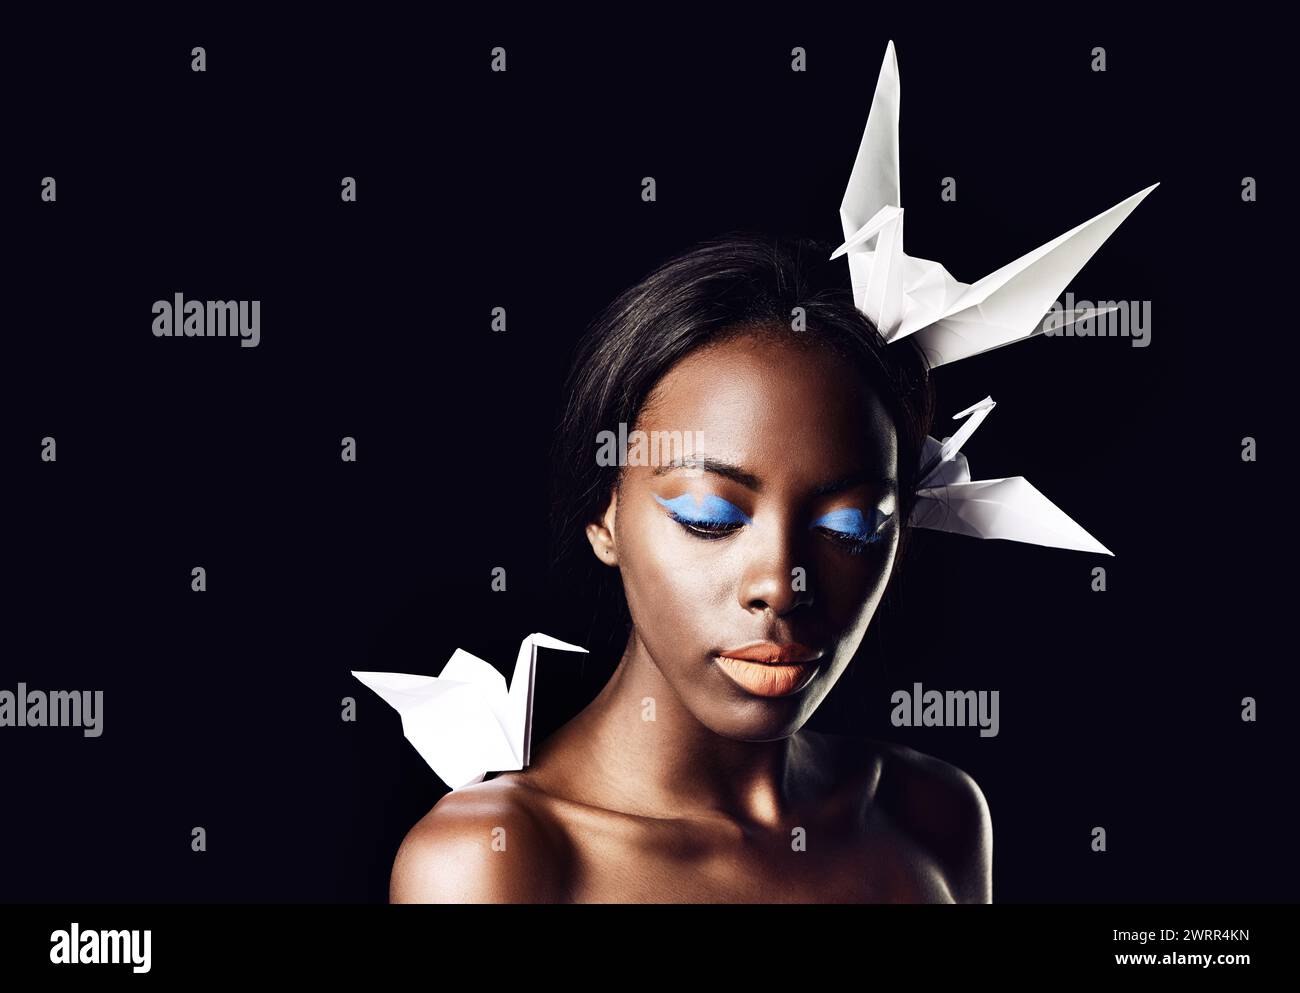 Schwarze Frau, Make-up und schöne Kunst mit Schönheit, Tauben- oder Origami-Vögeln auf dunklem Studiohintergrund. Nahaufnahme oder Gesicht einer afrikanischen weiblichen Person oder eines afrikanischen Models Stockfoto